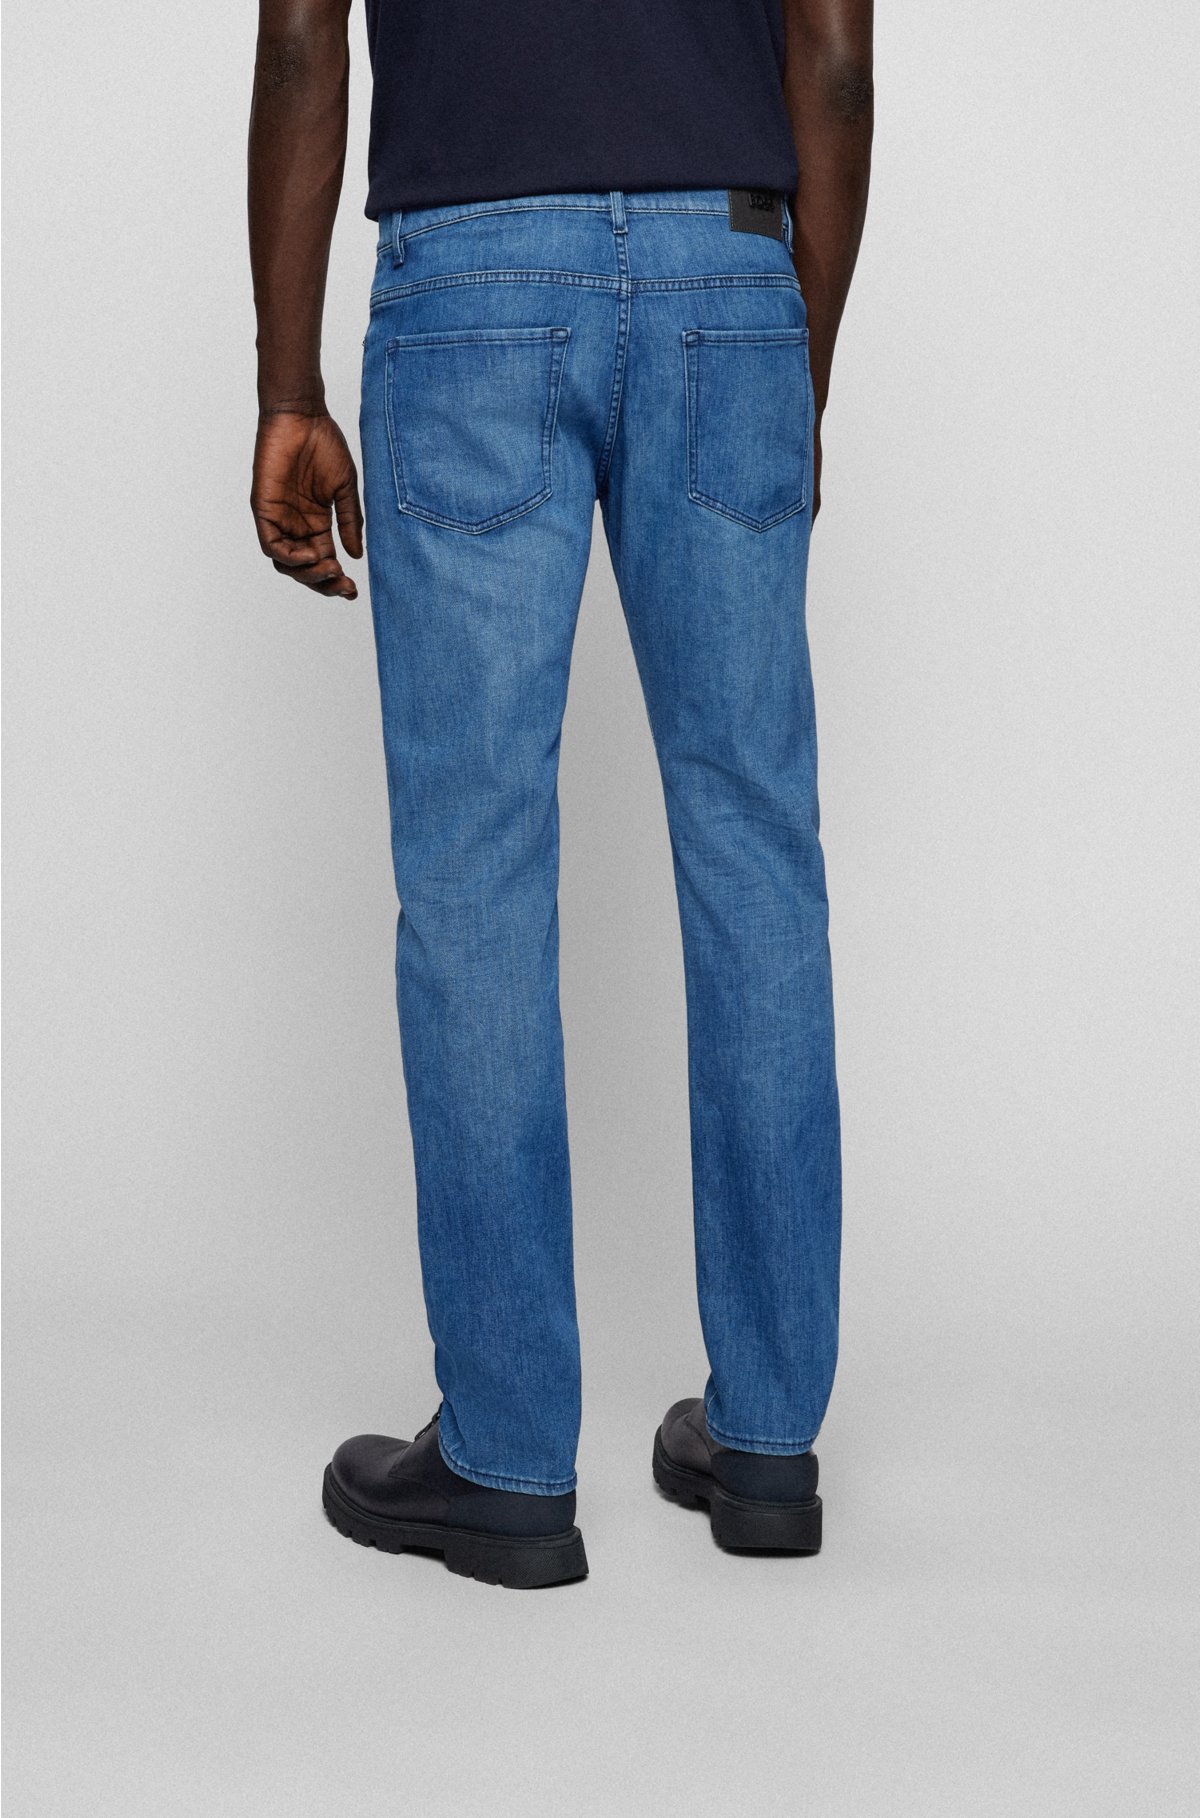 Peter Do Men's Wide Side-Stripe Jeans